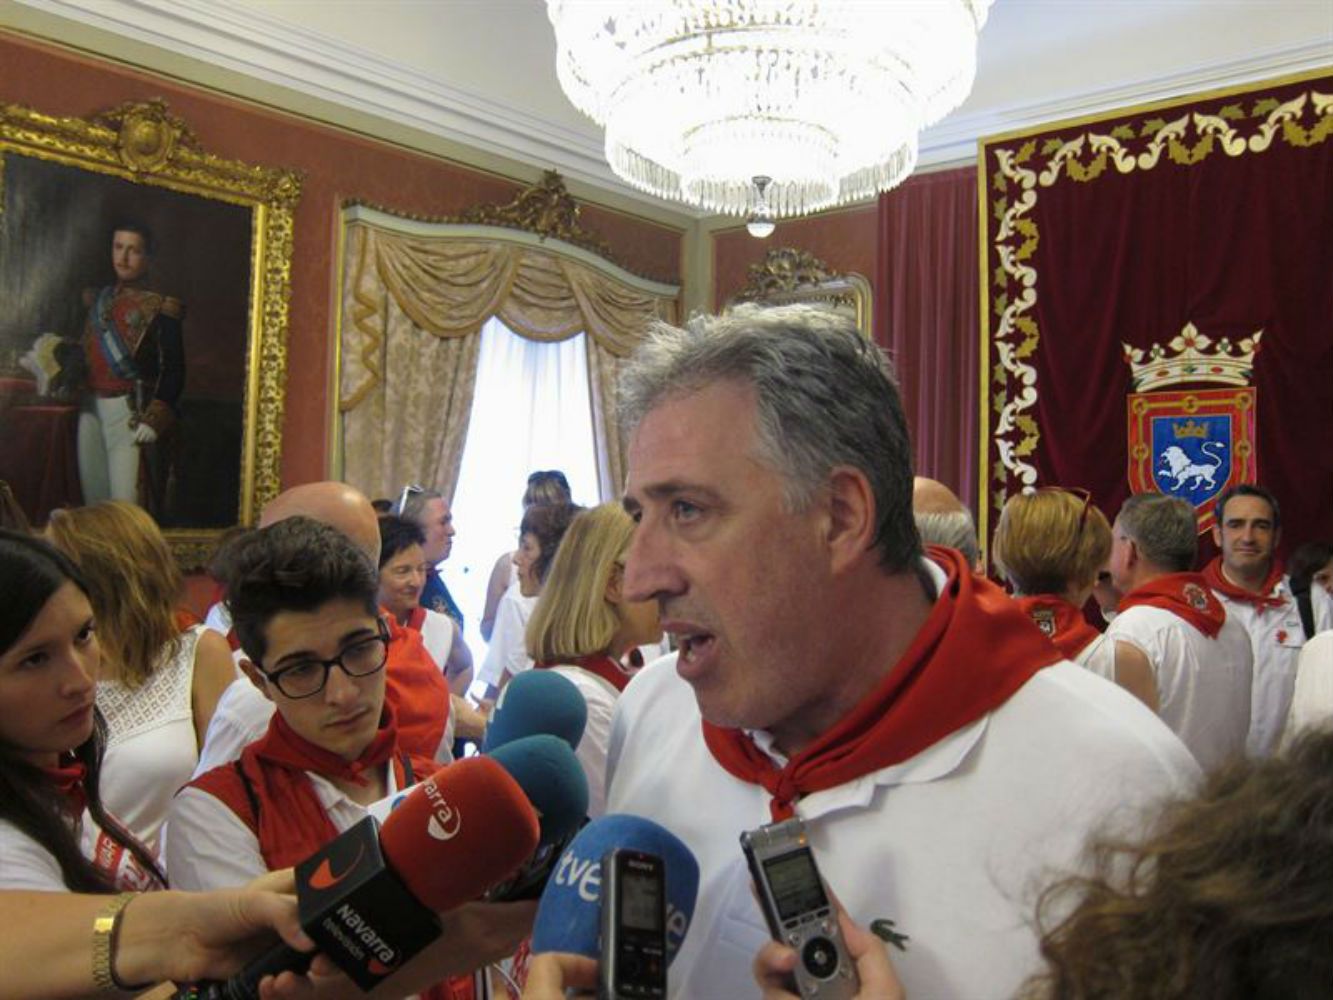 El alcalde de Pamplona, "impotente y cabreado" por las violaciones en San Fermín